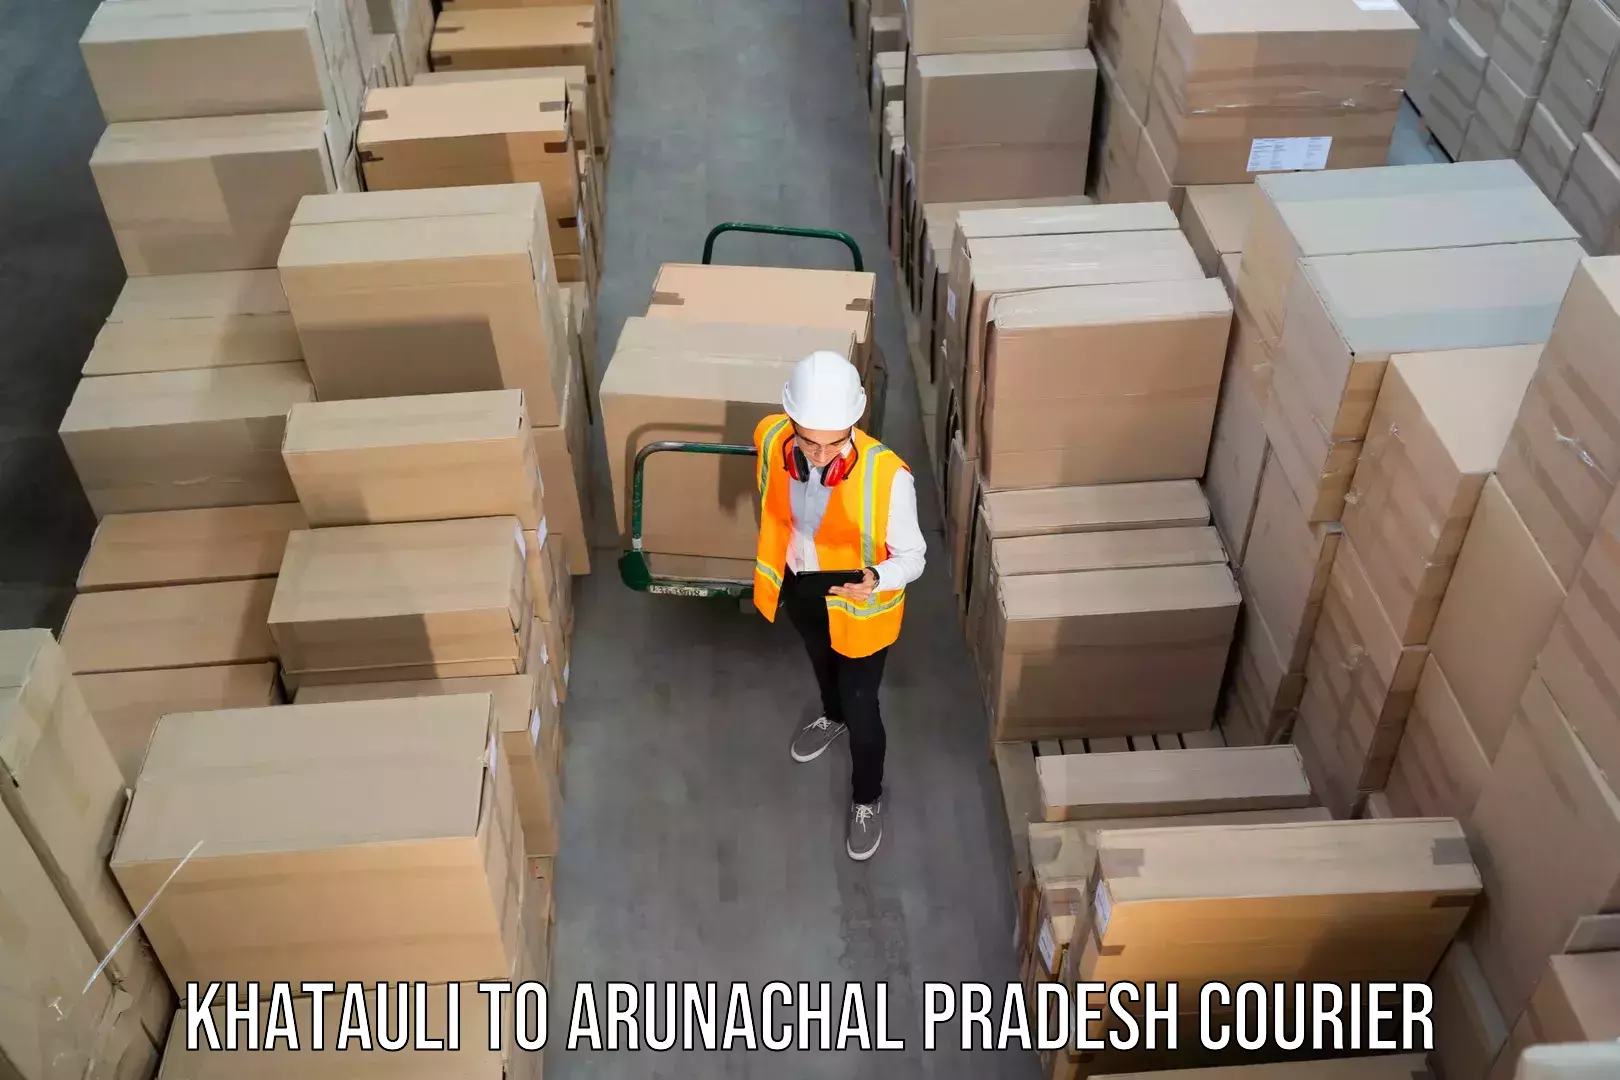 Next-generation courier services Khatauli to Arunachal Pradesh